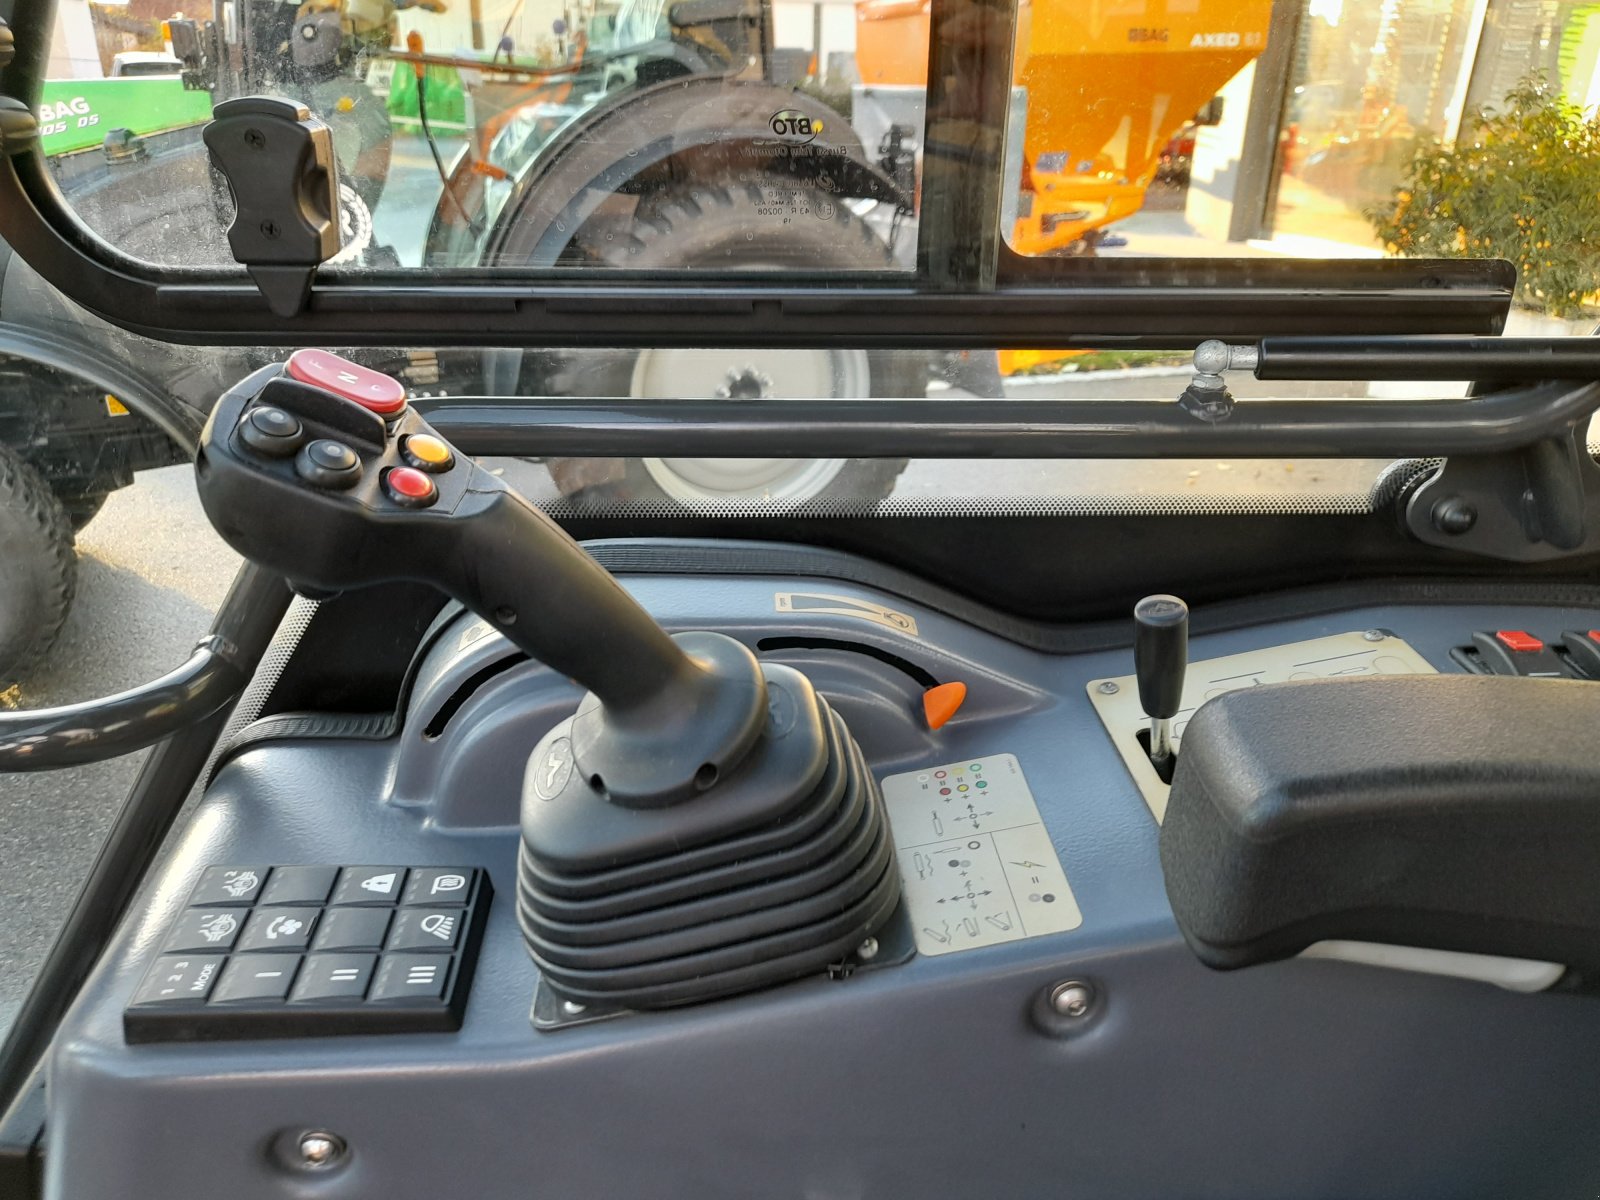 Kommunalfahrzeug des Typs Multihog CX 75, Gebrauchtmaschine in Bad Wurzach (Bild 3)